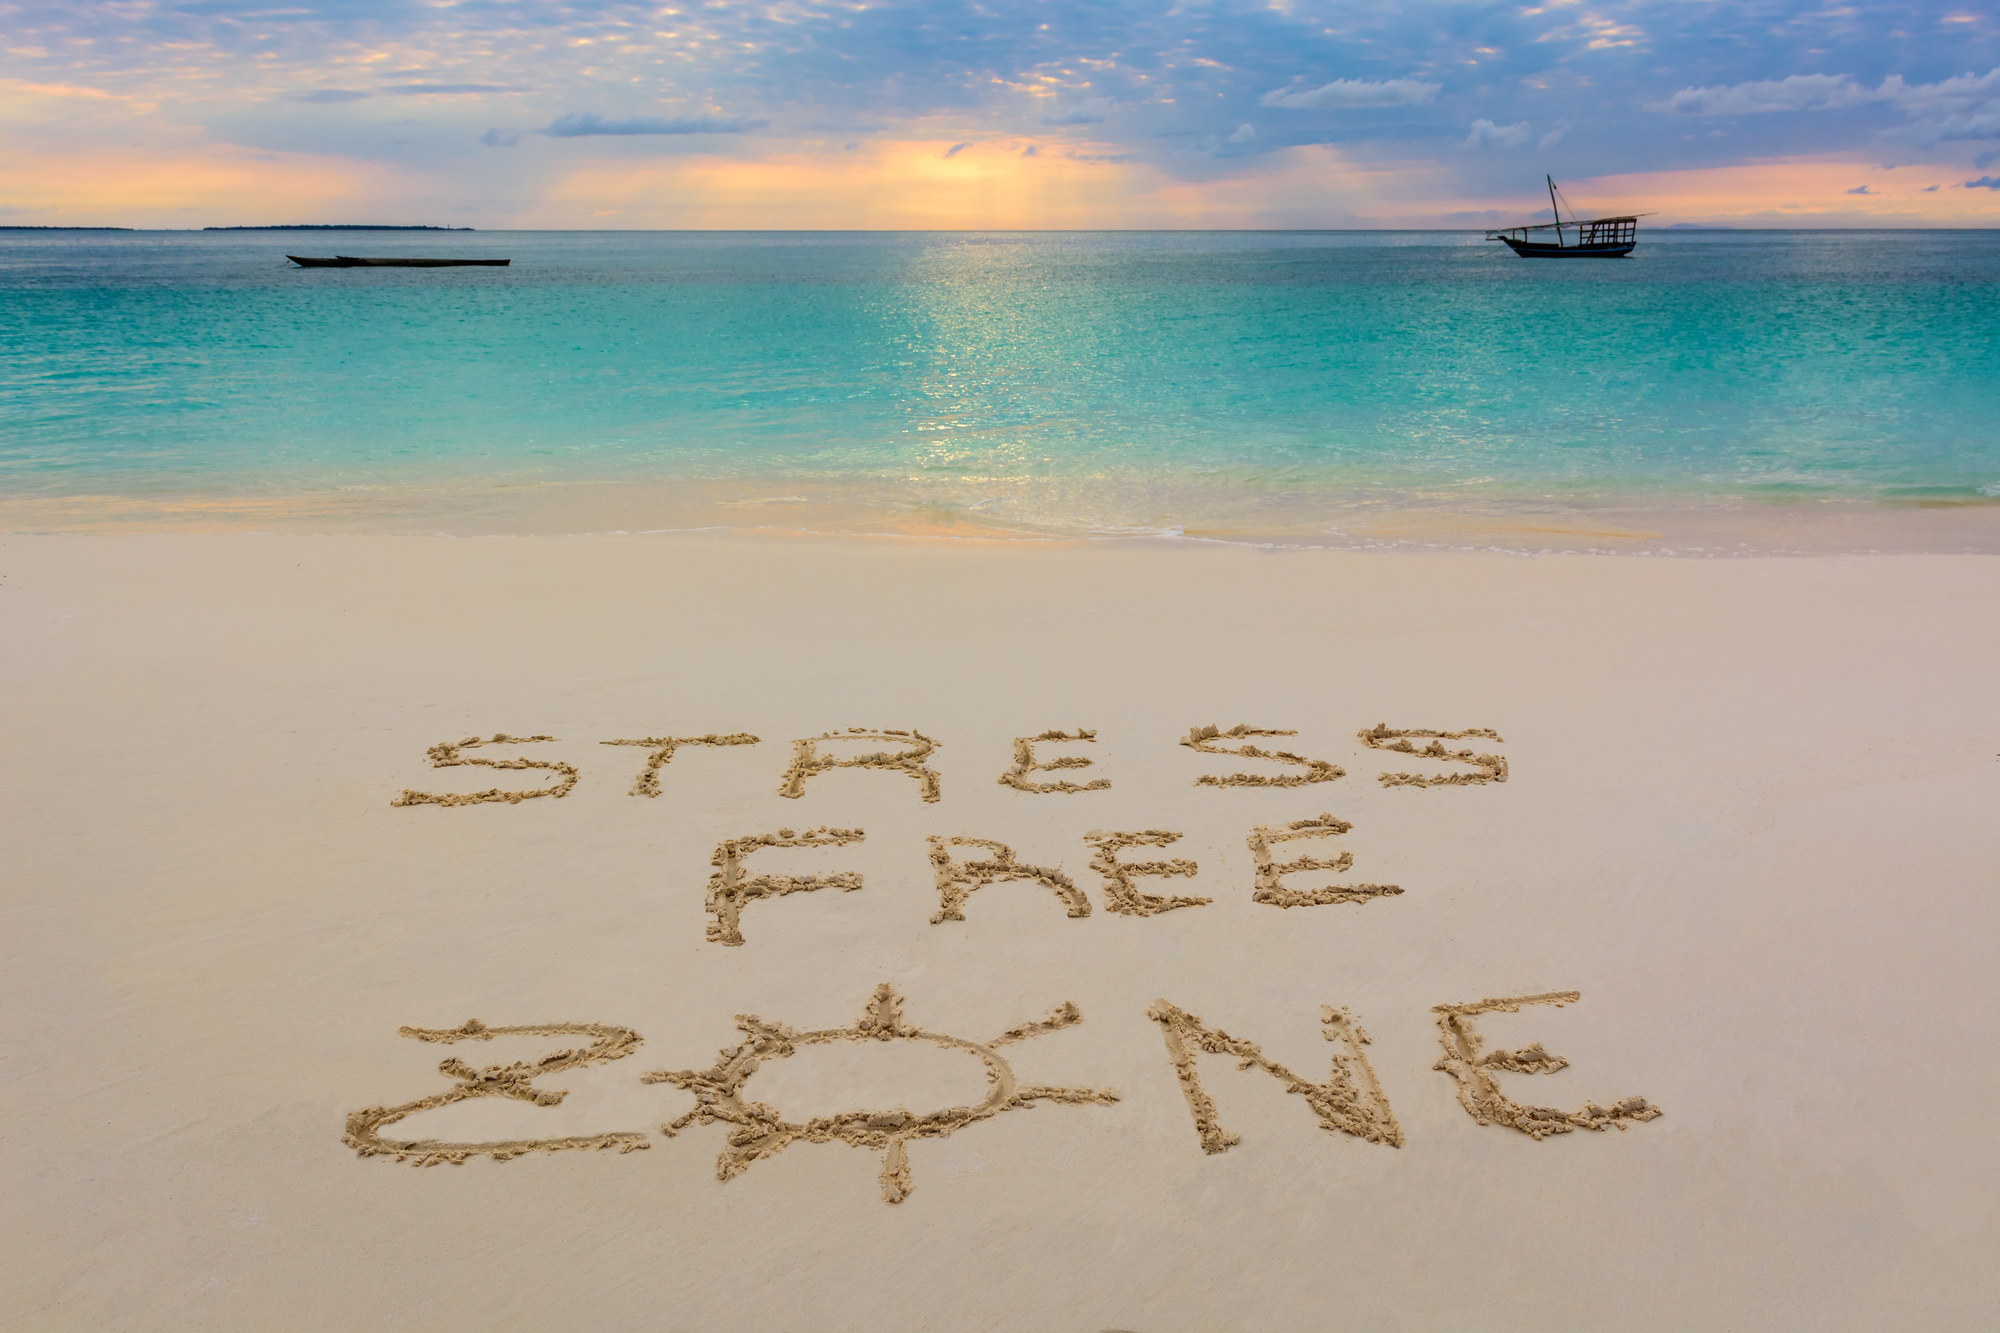 Stress free journey